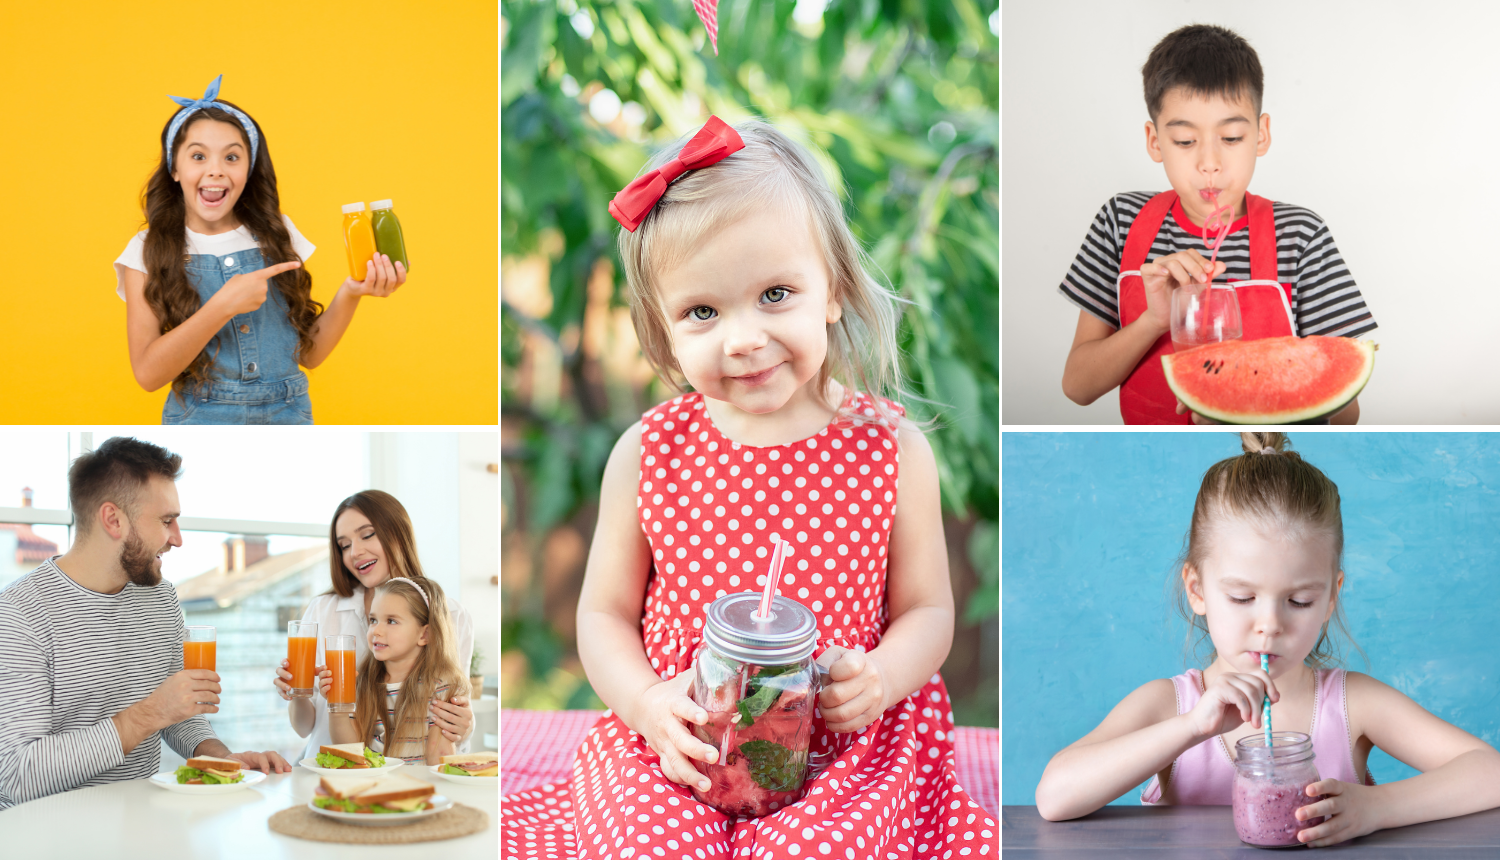 Zdravi ljetni sokići za mališane: 9 vrlo jednostavnih recepata